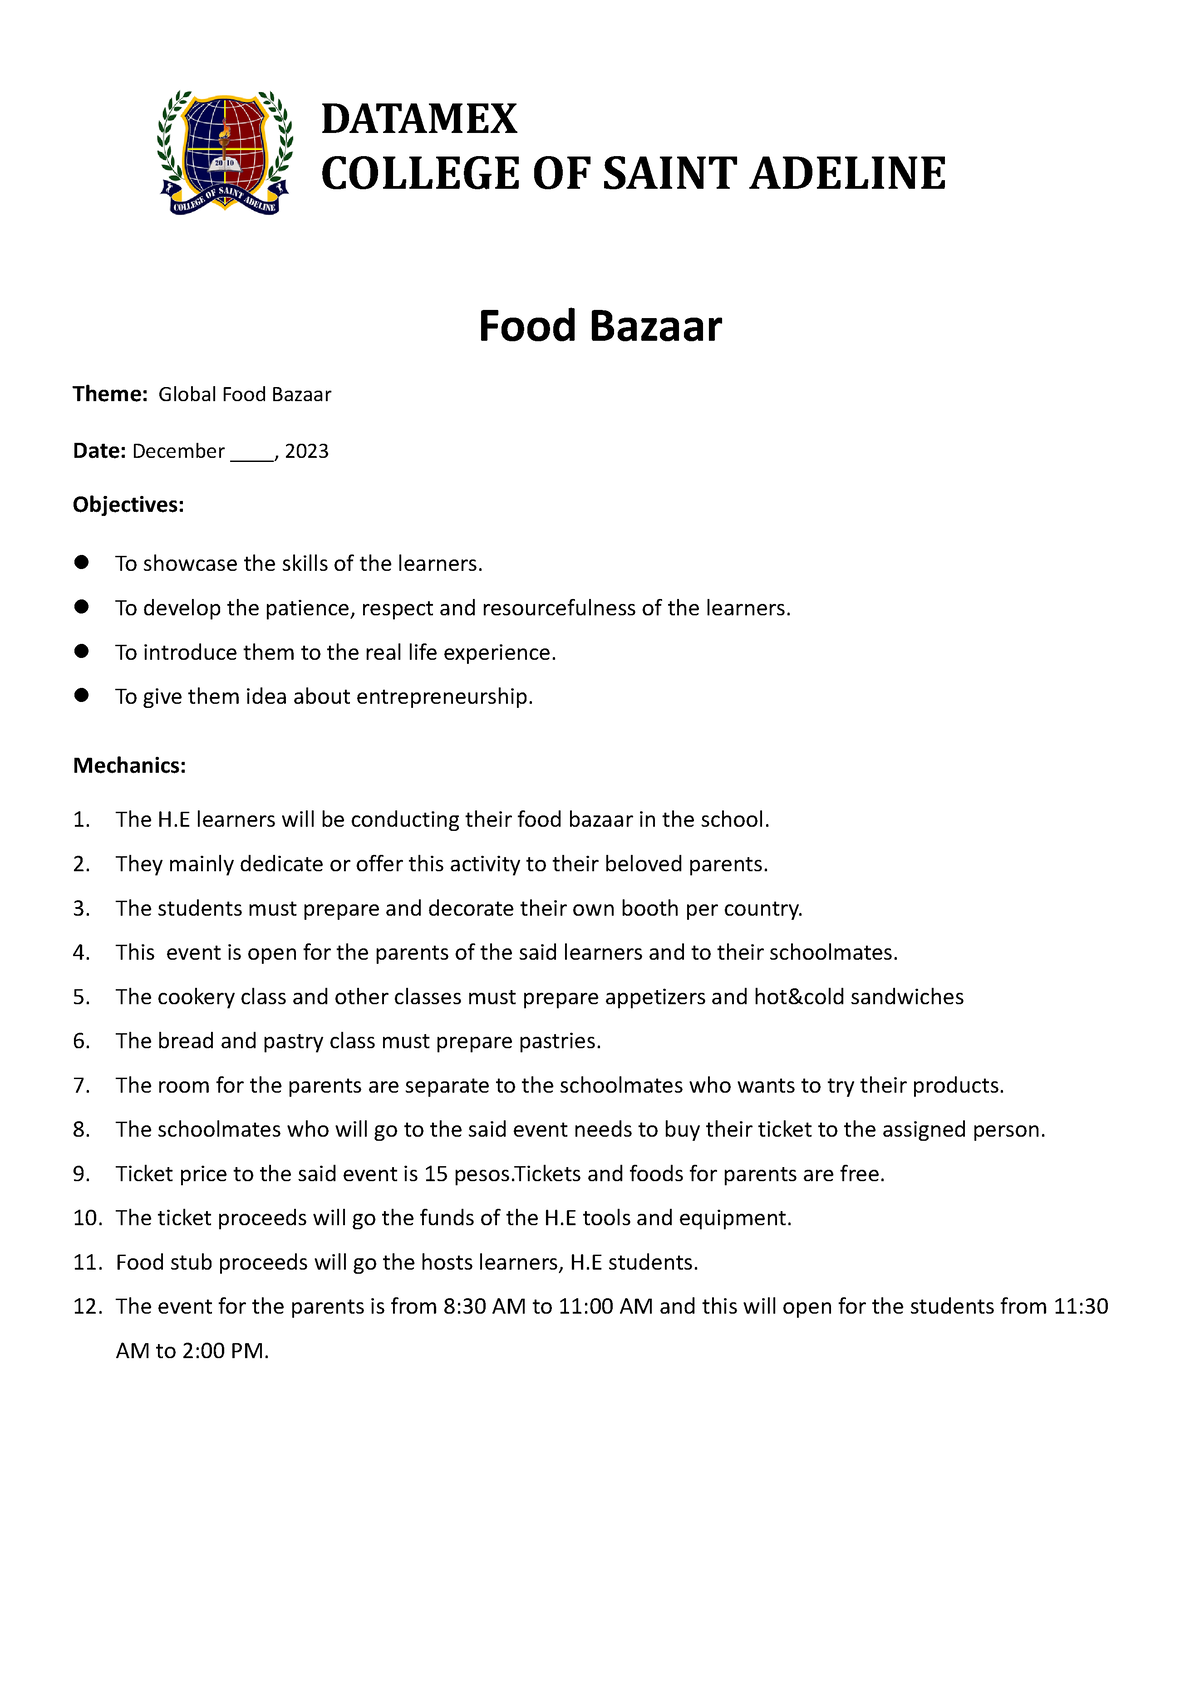 Food bazaar - Ala - Food Bazaar Theme: Global Food Bazaar Date ...